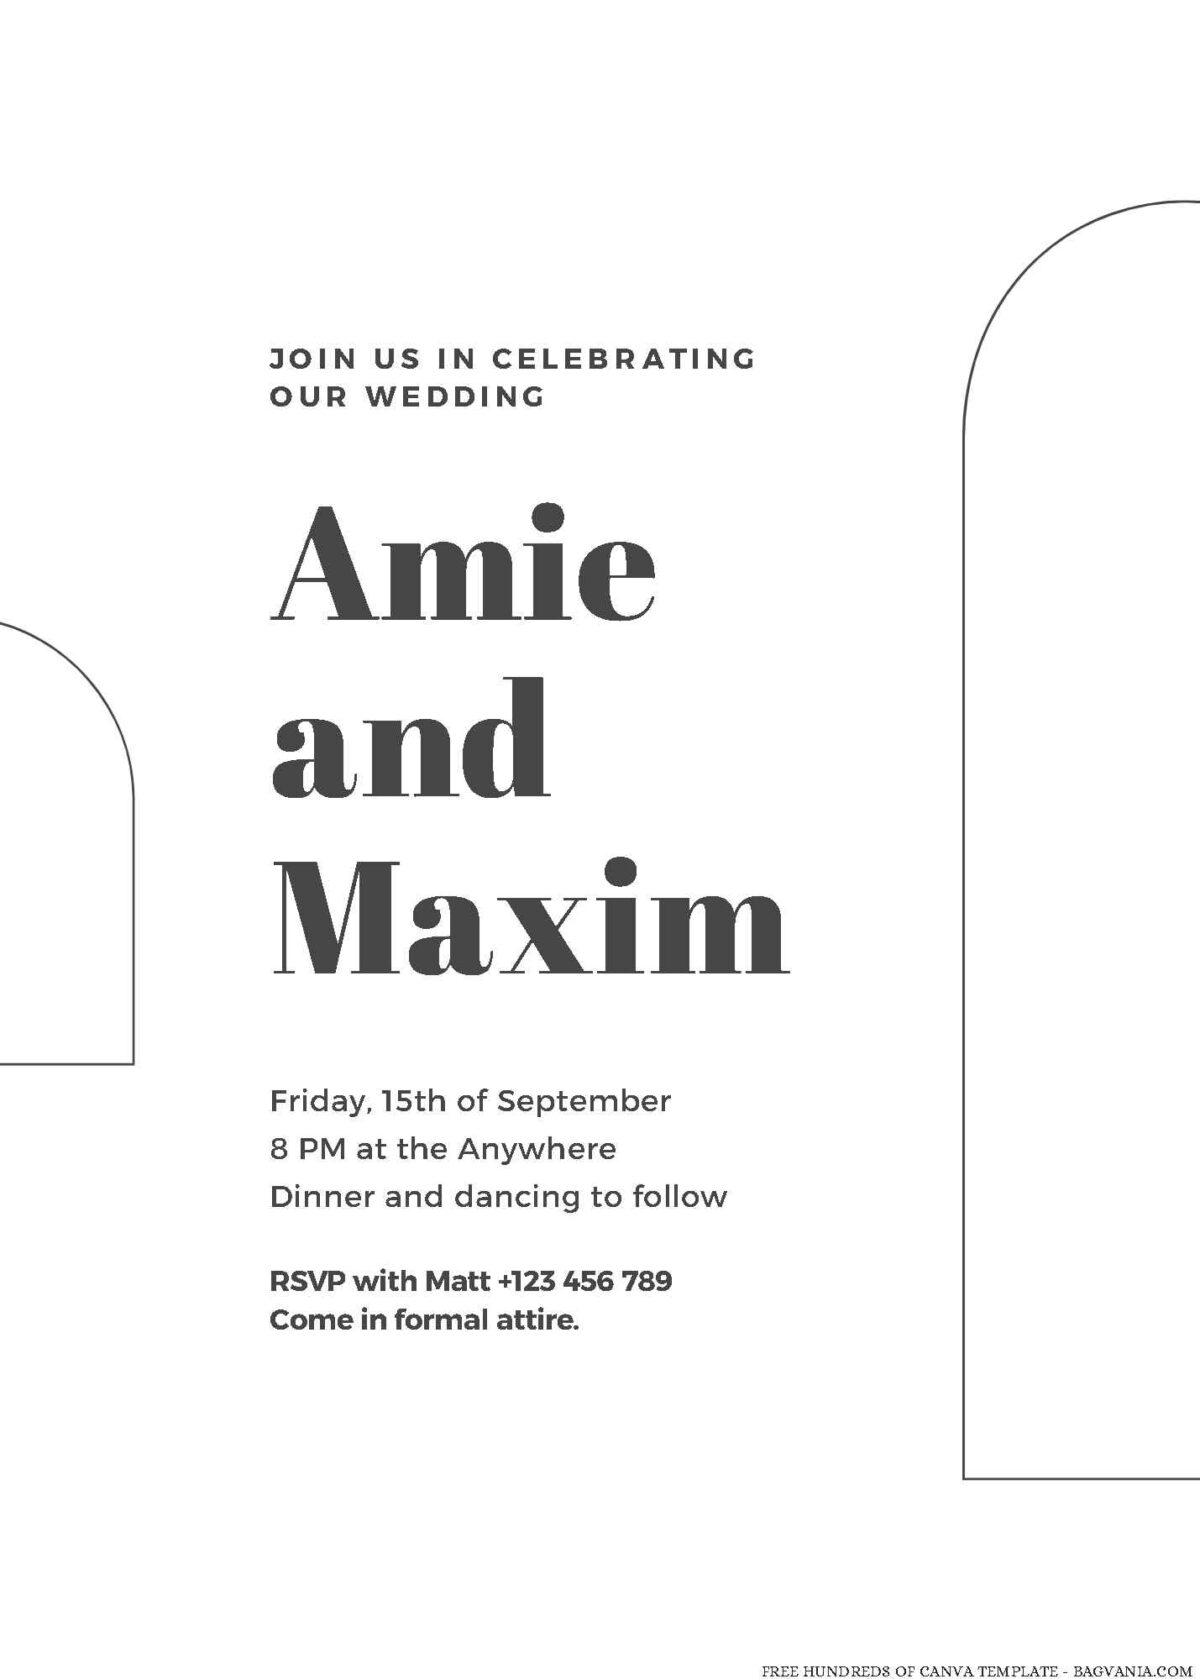 Free Editable Minimalist Arch Up Line Wedding Invitation